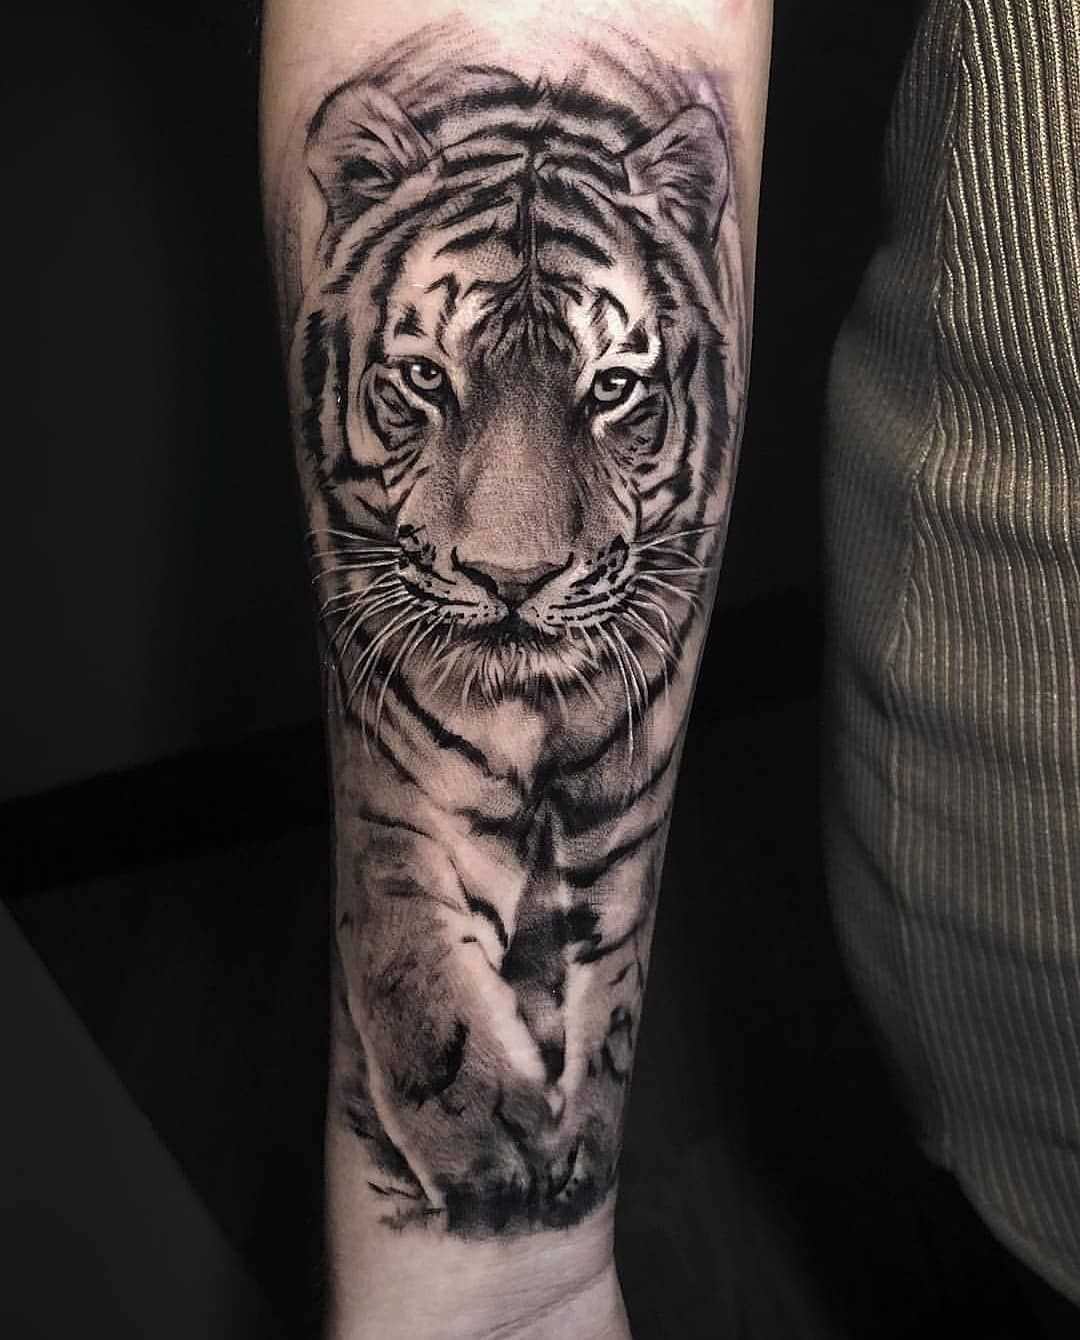 Tiger tattoo by Jackart Tattoo | Post 30497